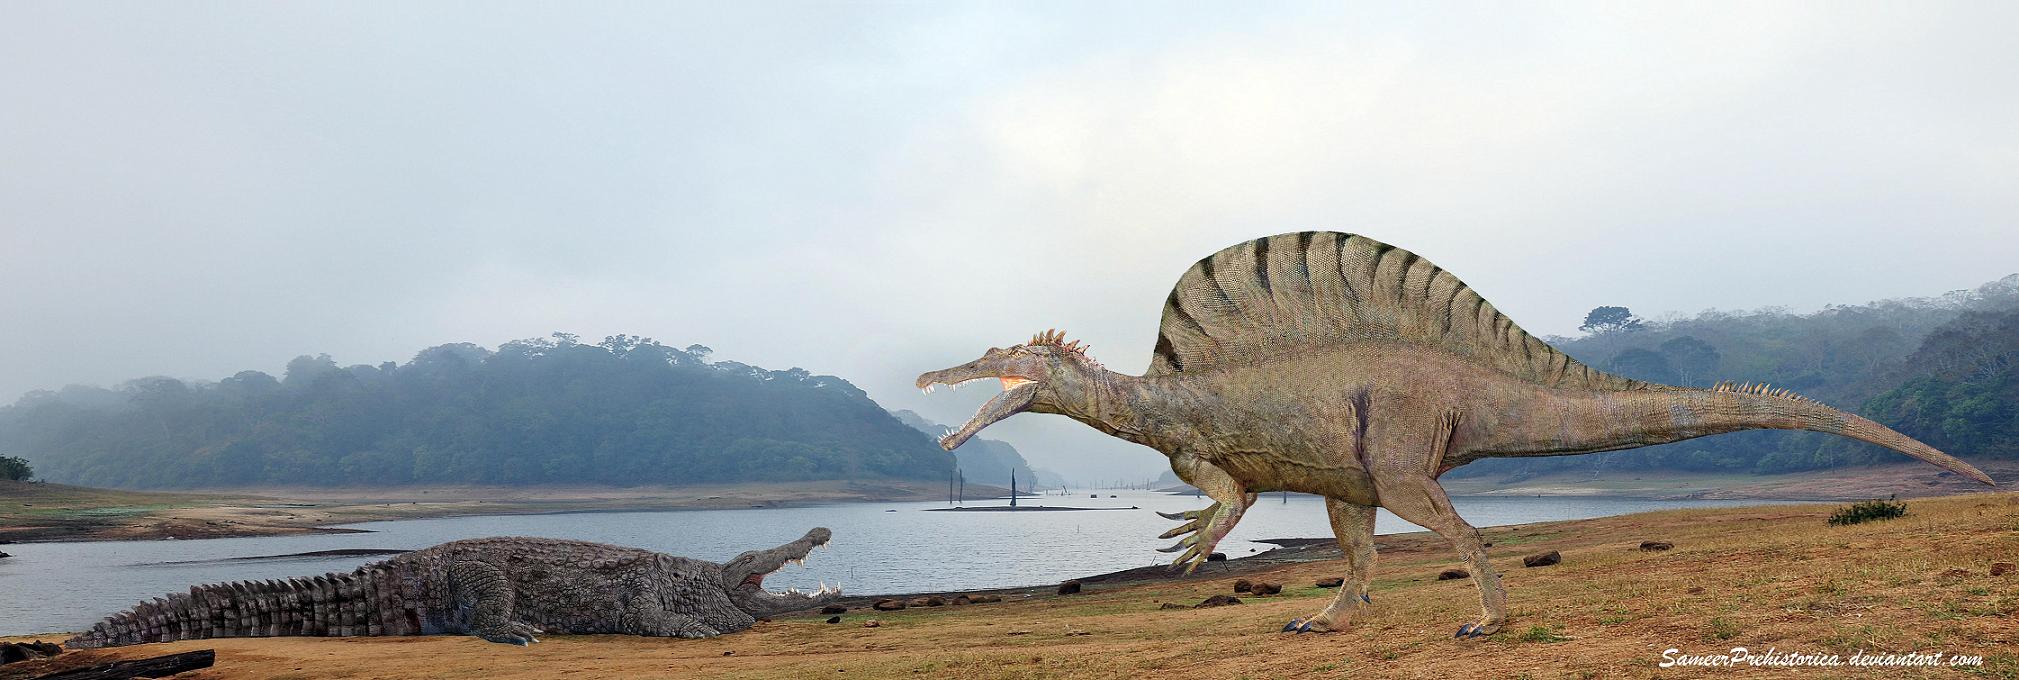 Spinosaurus vs Deinosuchus by SameerPrehistorica on DeviantArt